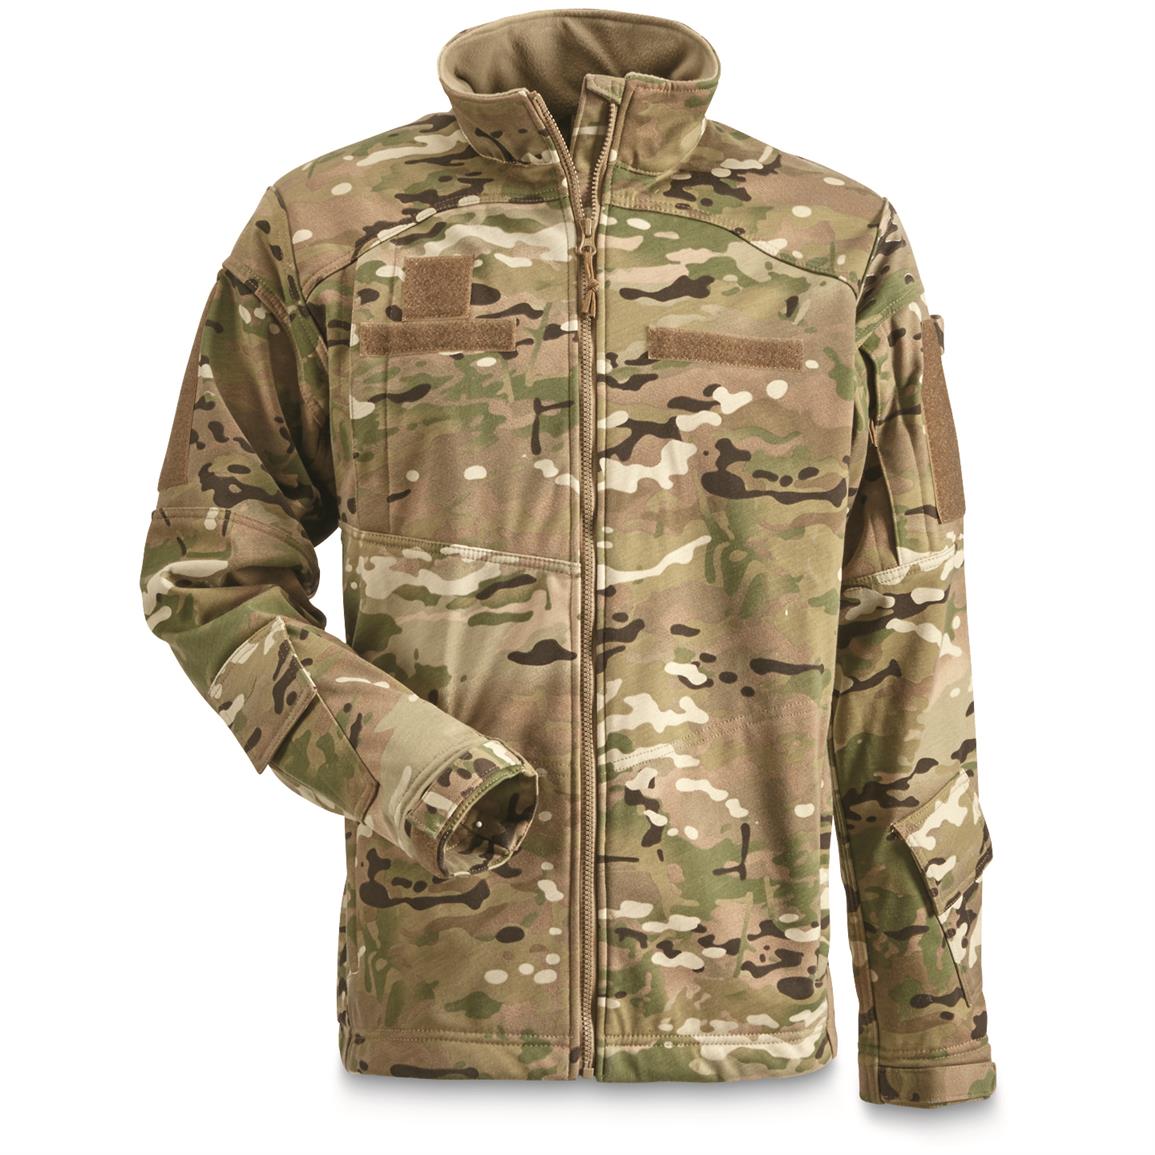 Army Ocp Winter Jacket